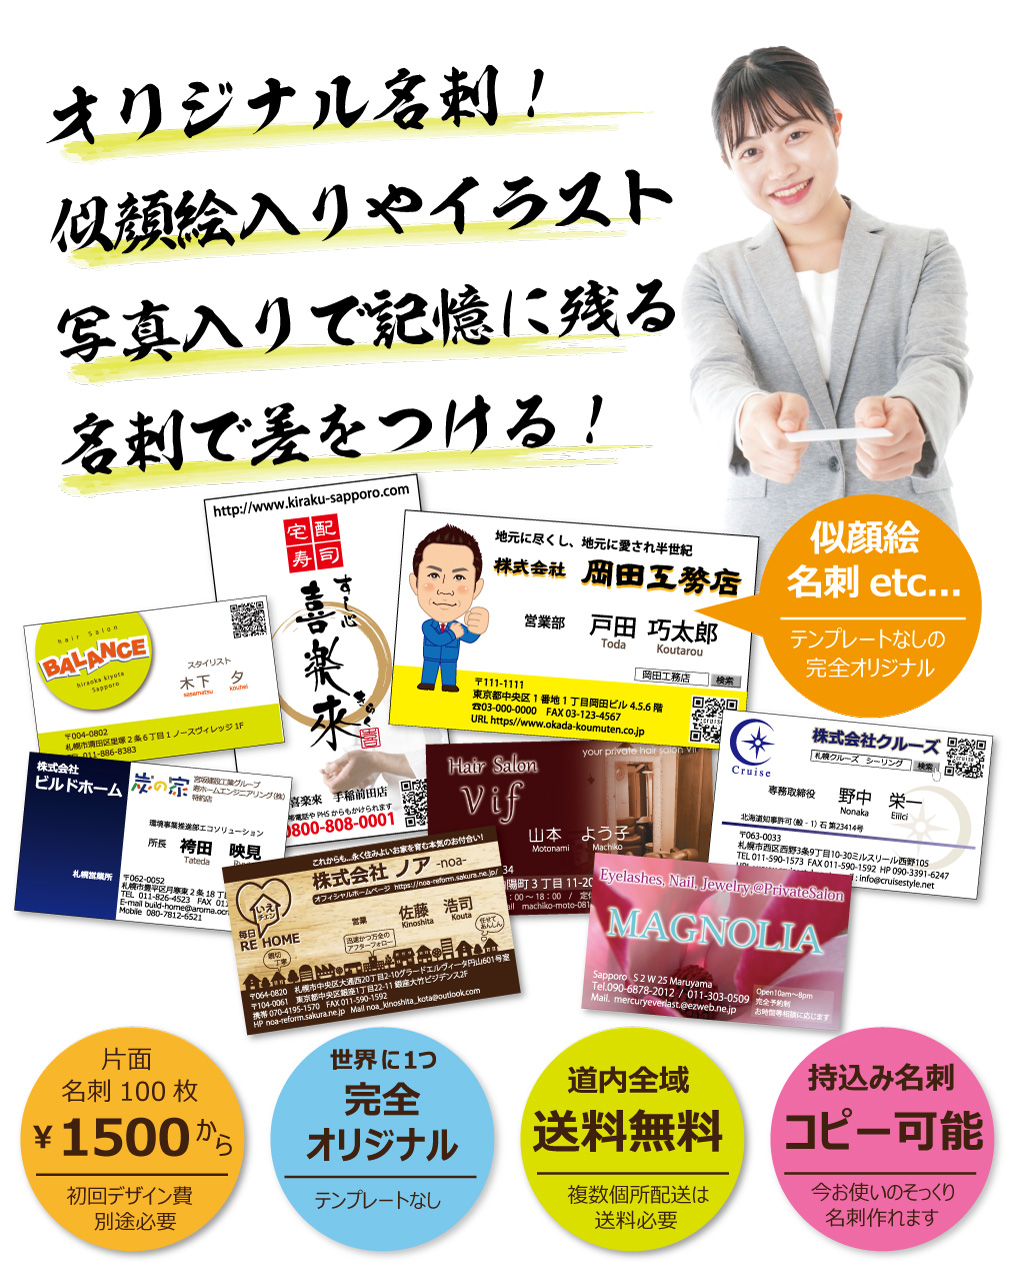 札幌でオリジナル名刺なら、安い、おしゃれ、通販可能なNKデザイン